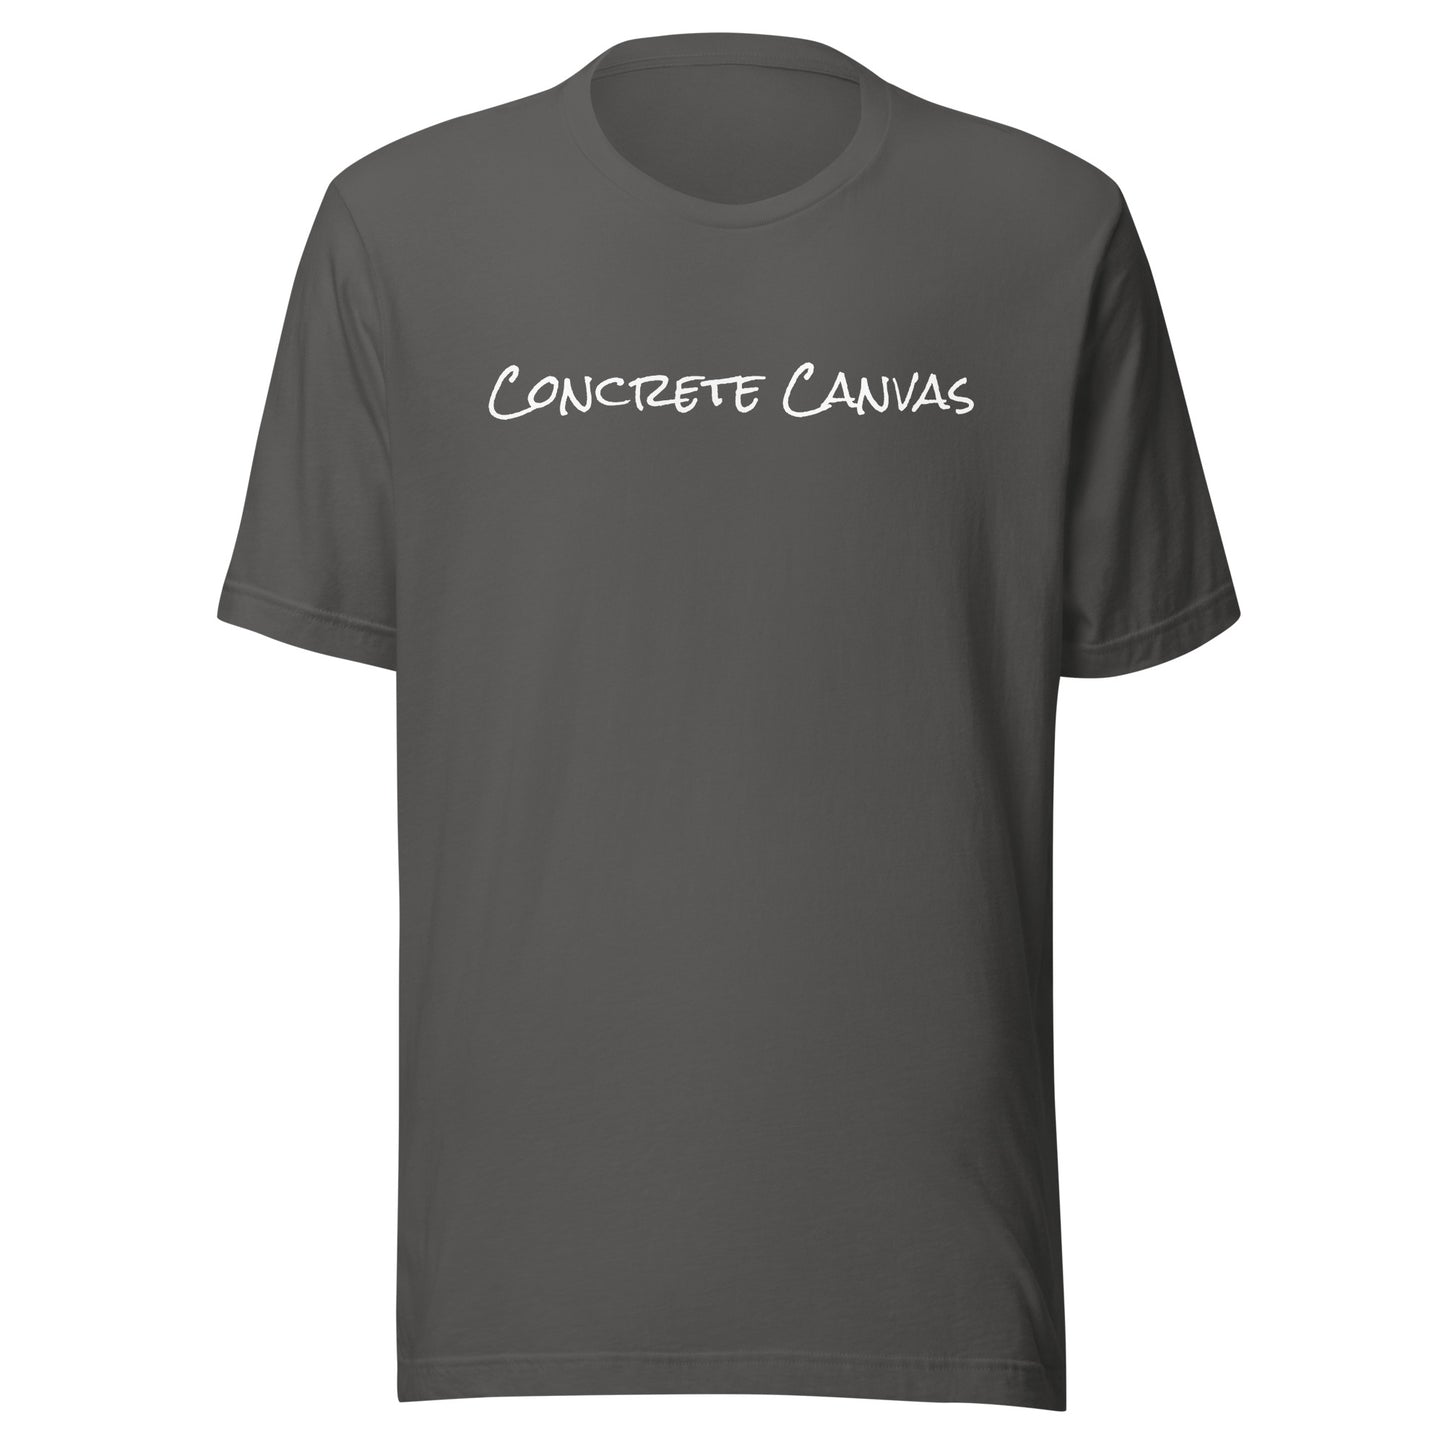 Concrete Canvas Unisex T-Shirt